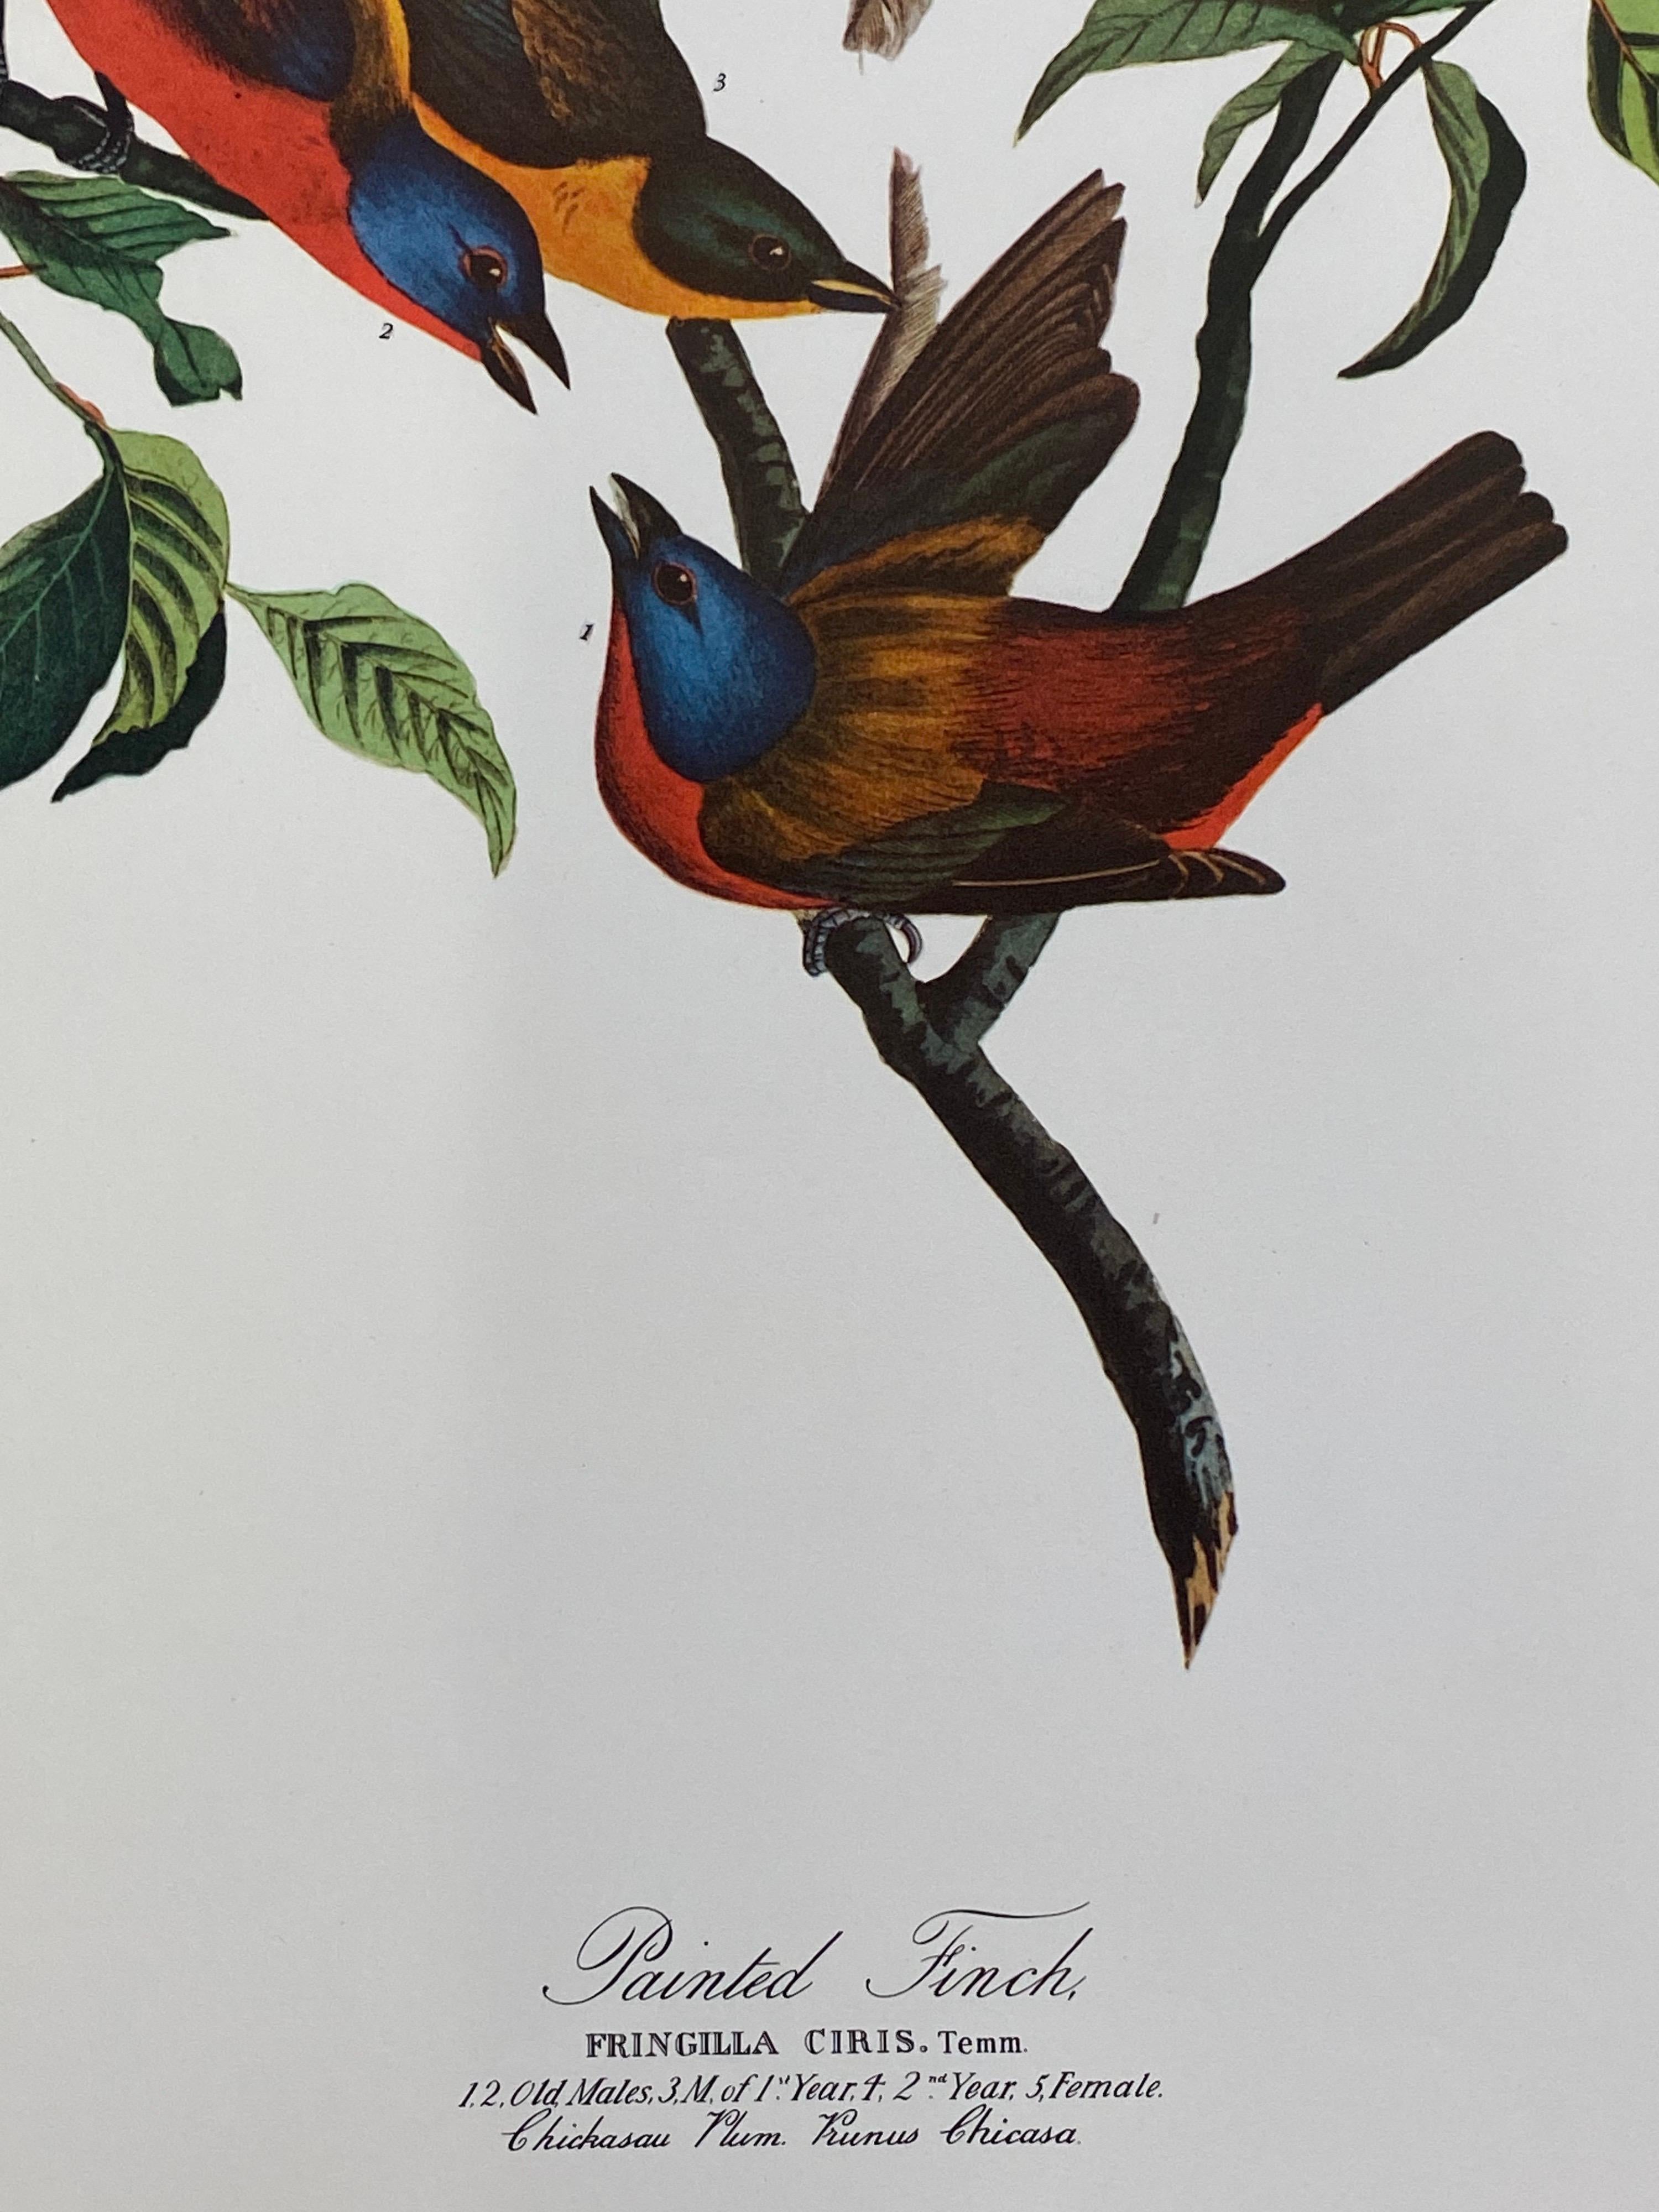 Klassischer Vogeldruck, 
nach John James Audubon, 
gedruckt von Harry N. Abrams, Verlag, New York
ungerahmt, 17 x 14 Zoll, Farbdruck auf Papier
zustand: sehr gut
herkunft: von einem privaten Sammler hier im Vereinigten Königreich.